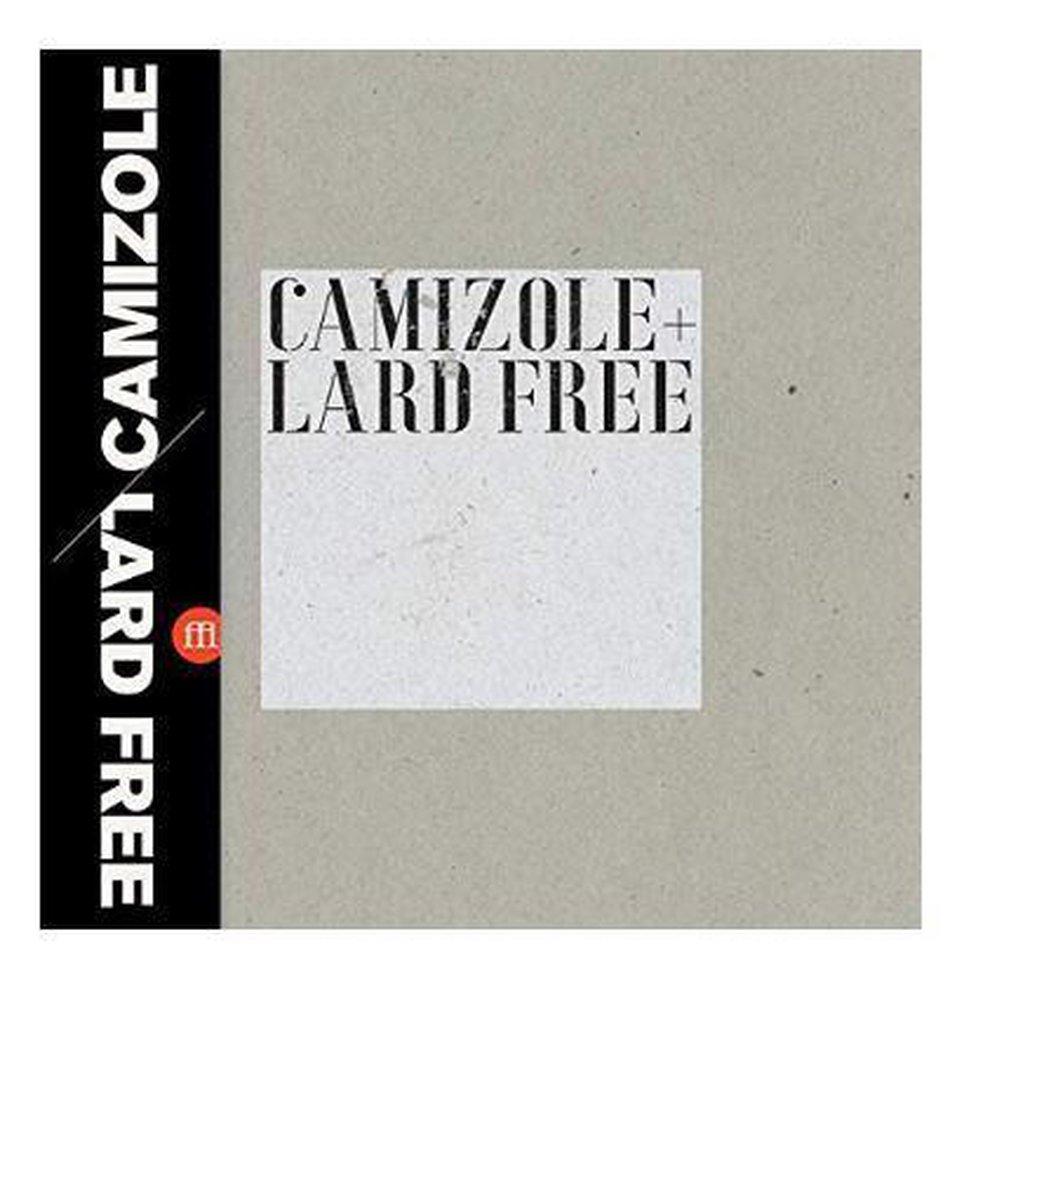 Camizole+Lard Free - Camizole